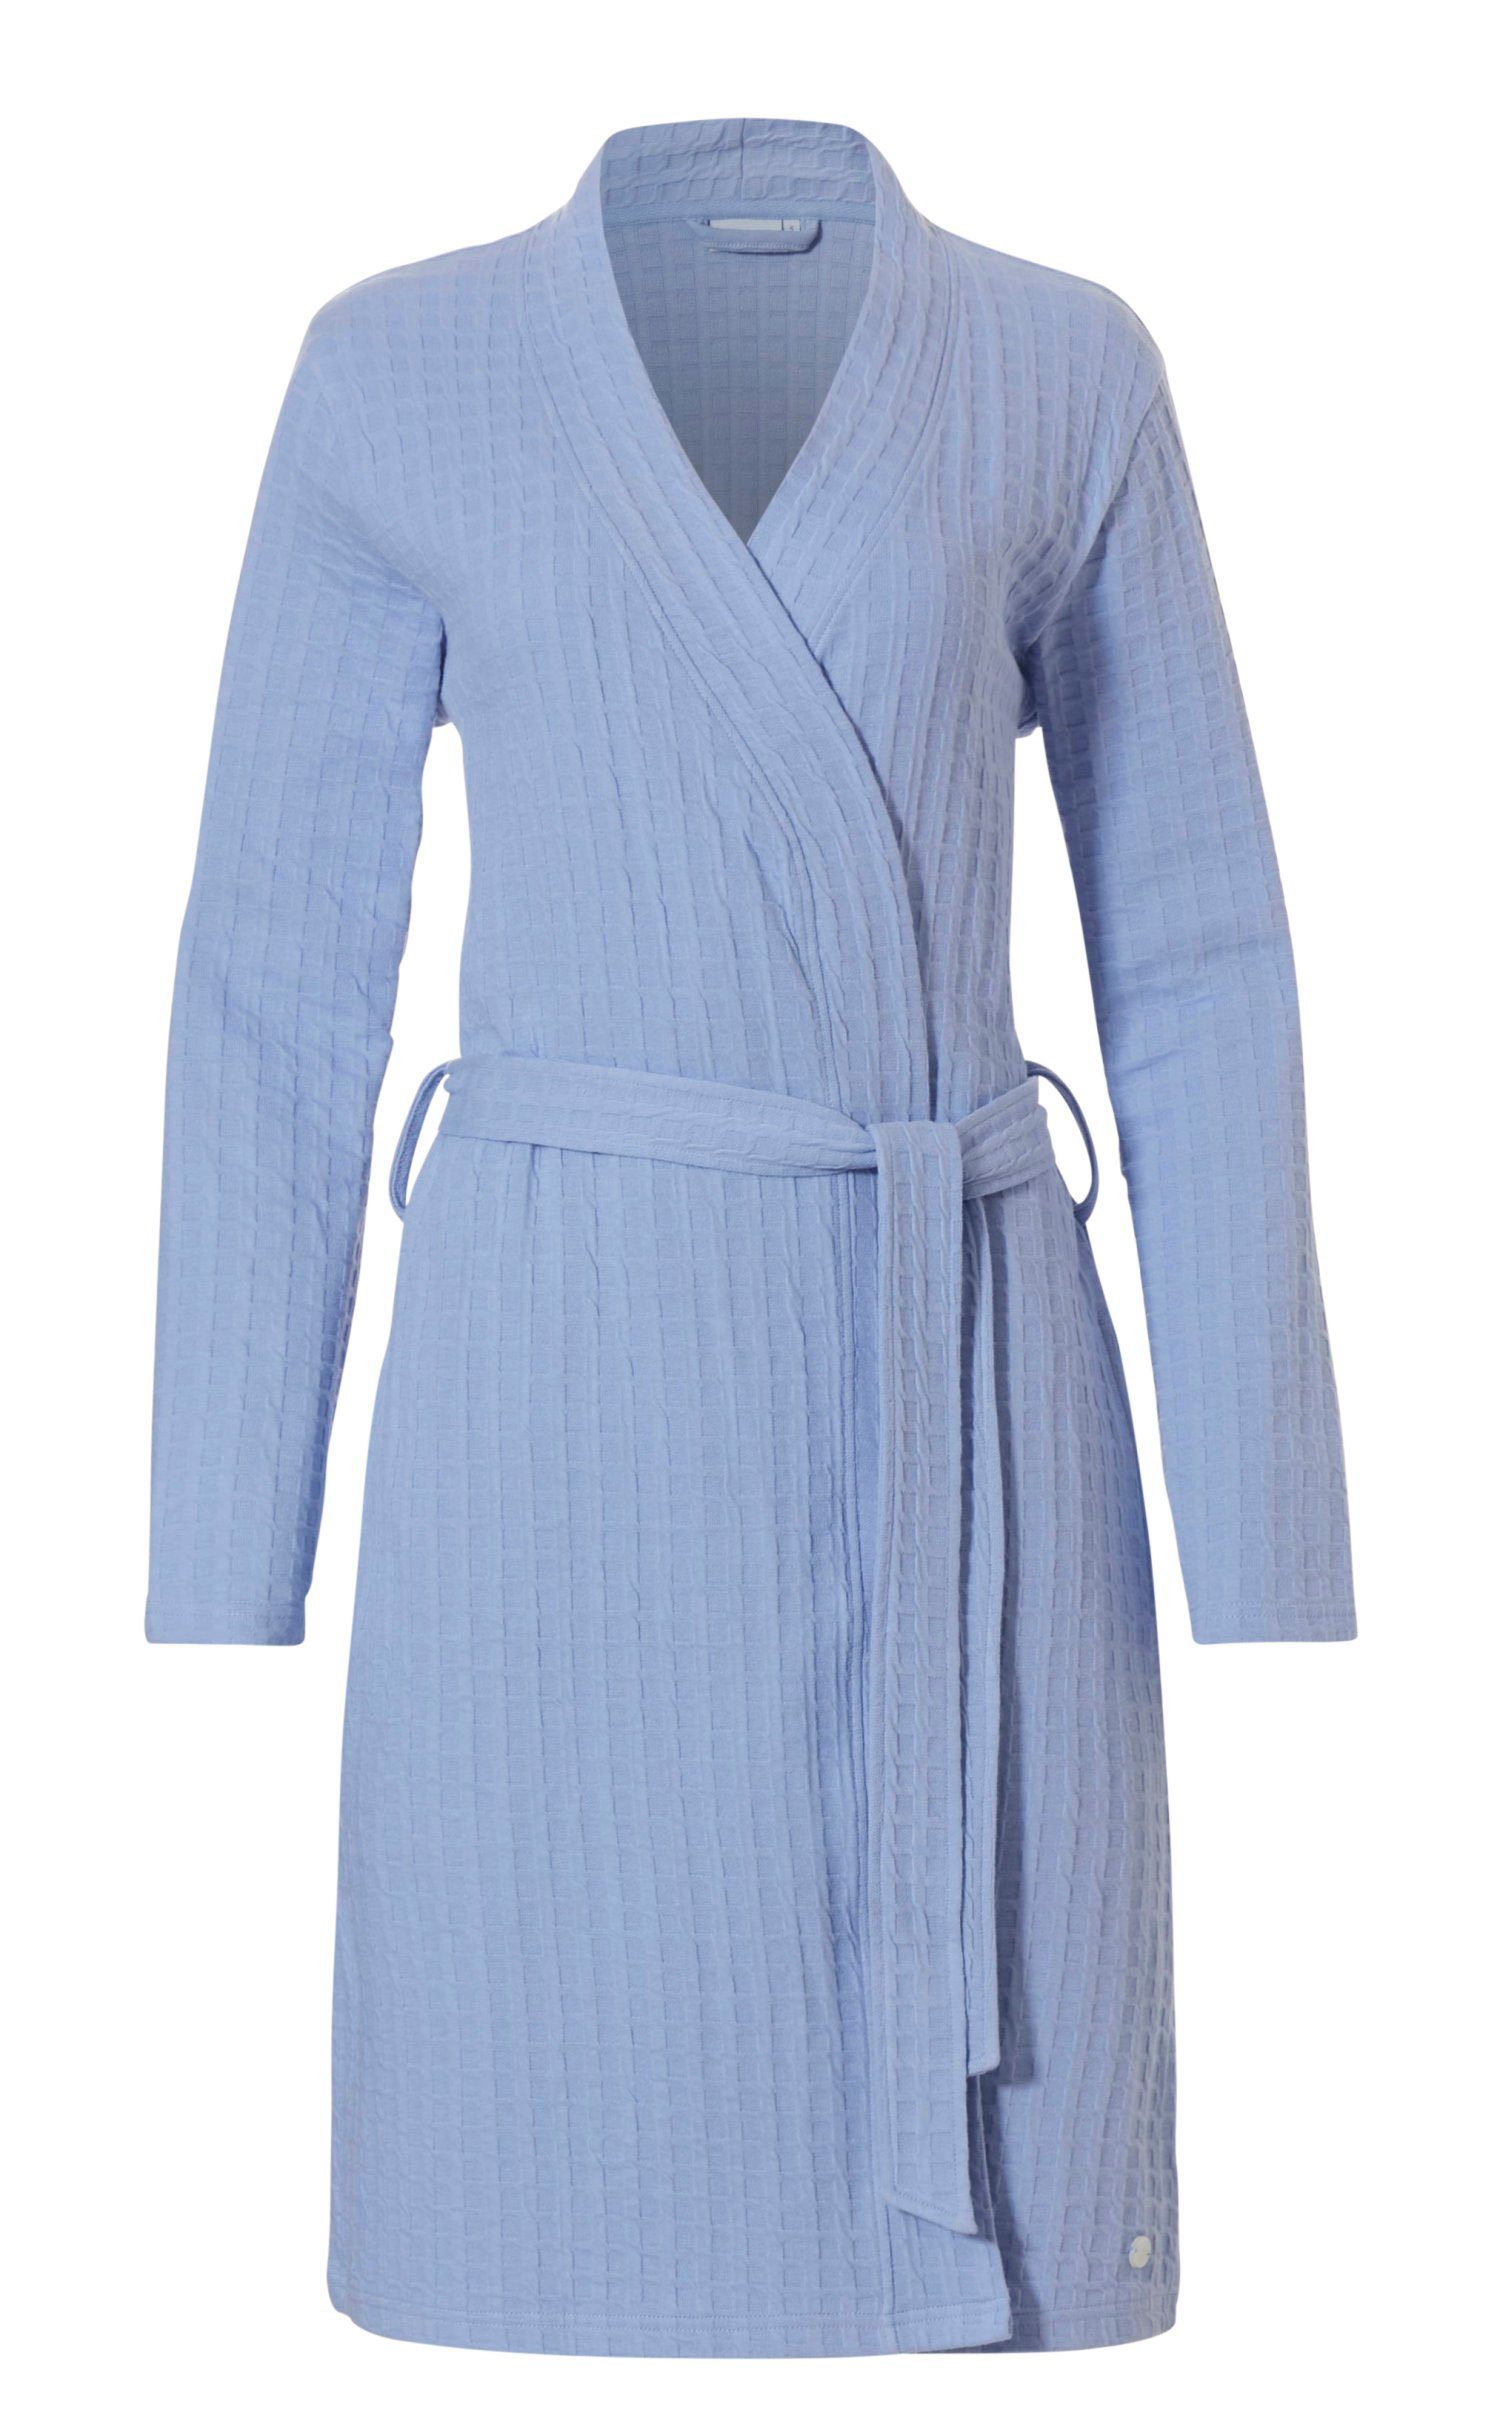 Damen Form, Gürtel, Kimono light Design Pastunette blue kurz, Morgenmantel Baumwollmischung, Morgenmantel Modisches Kimono-Kragen,